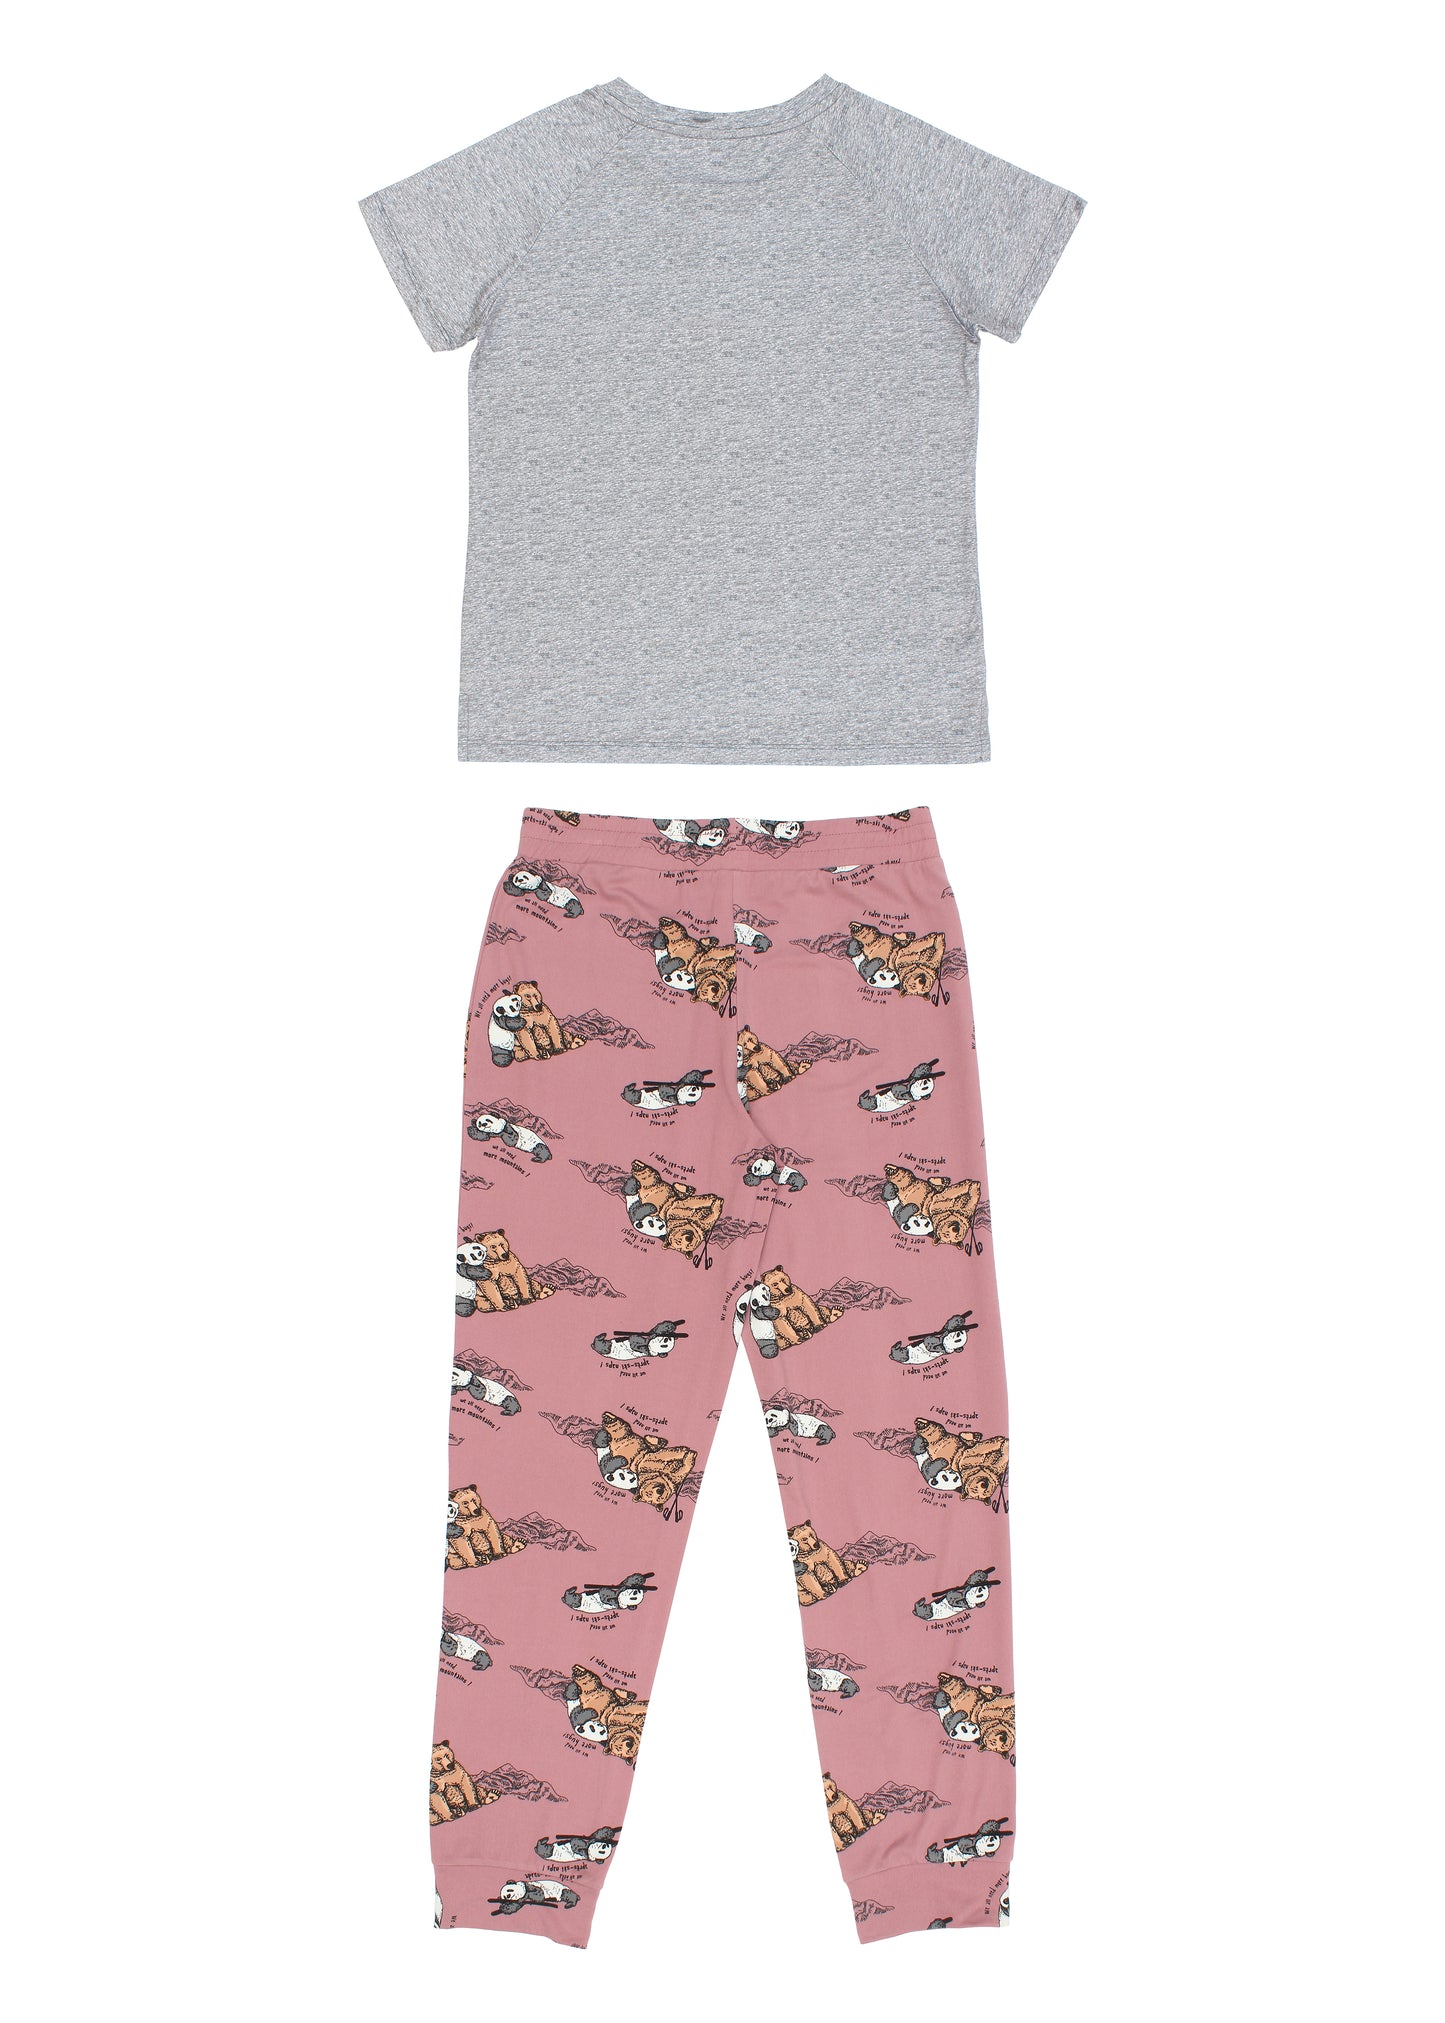 Pyjama Ours & Panda